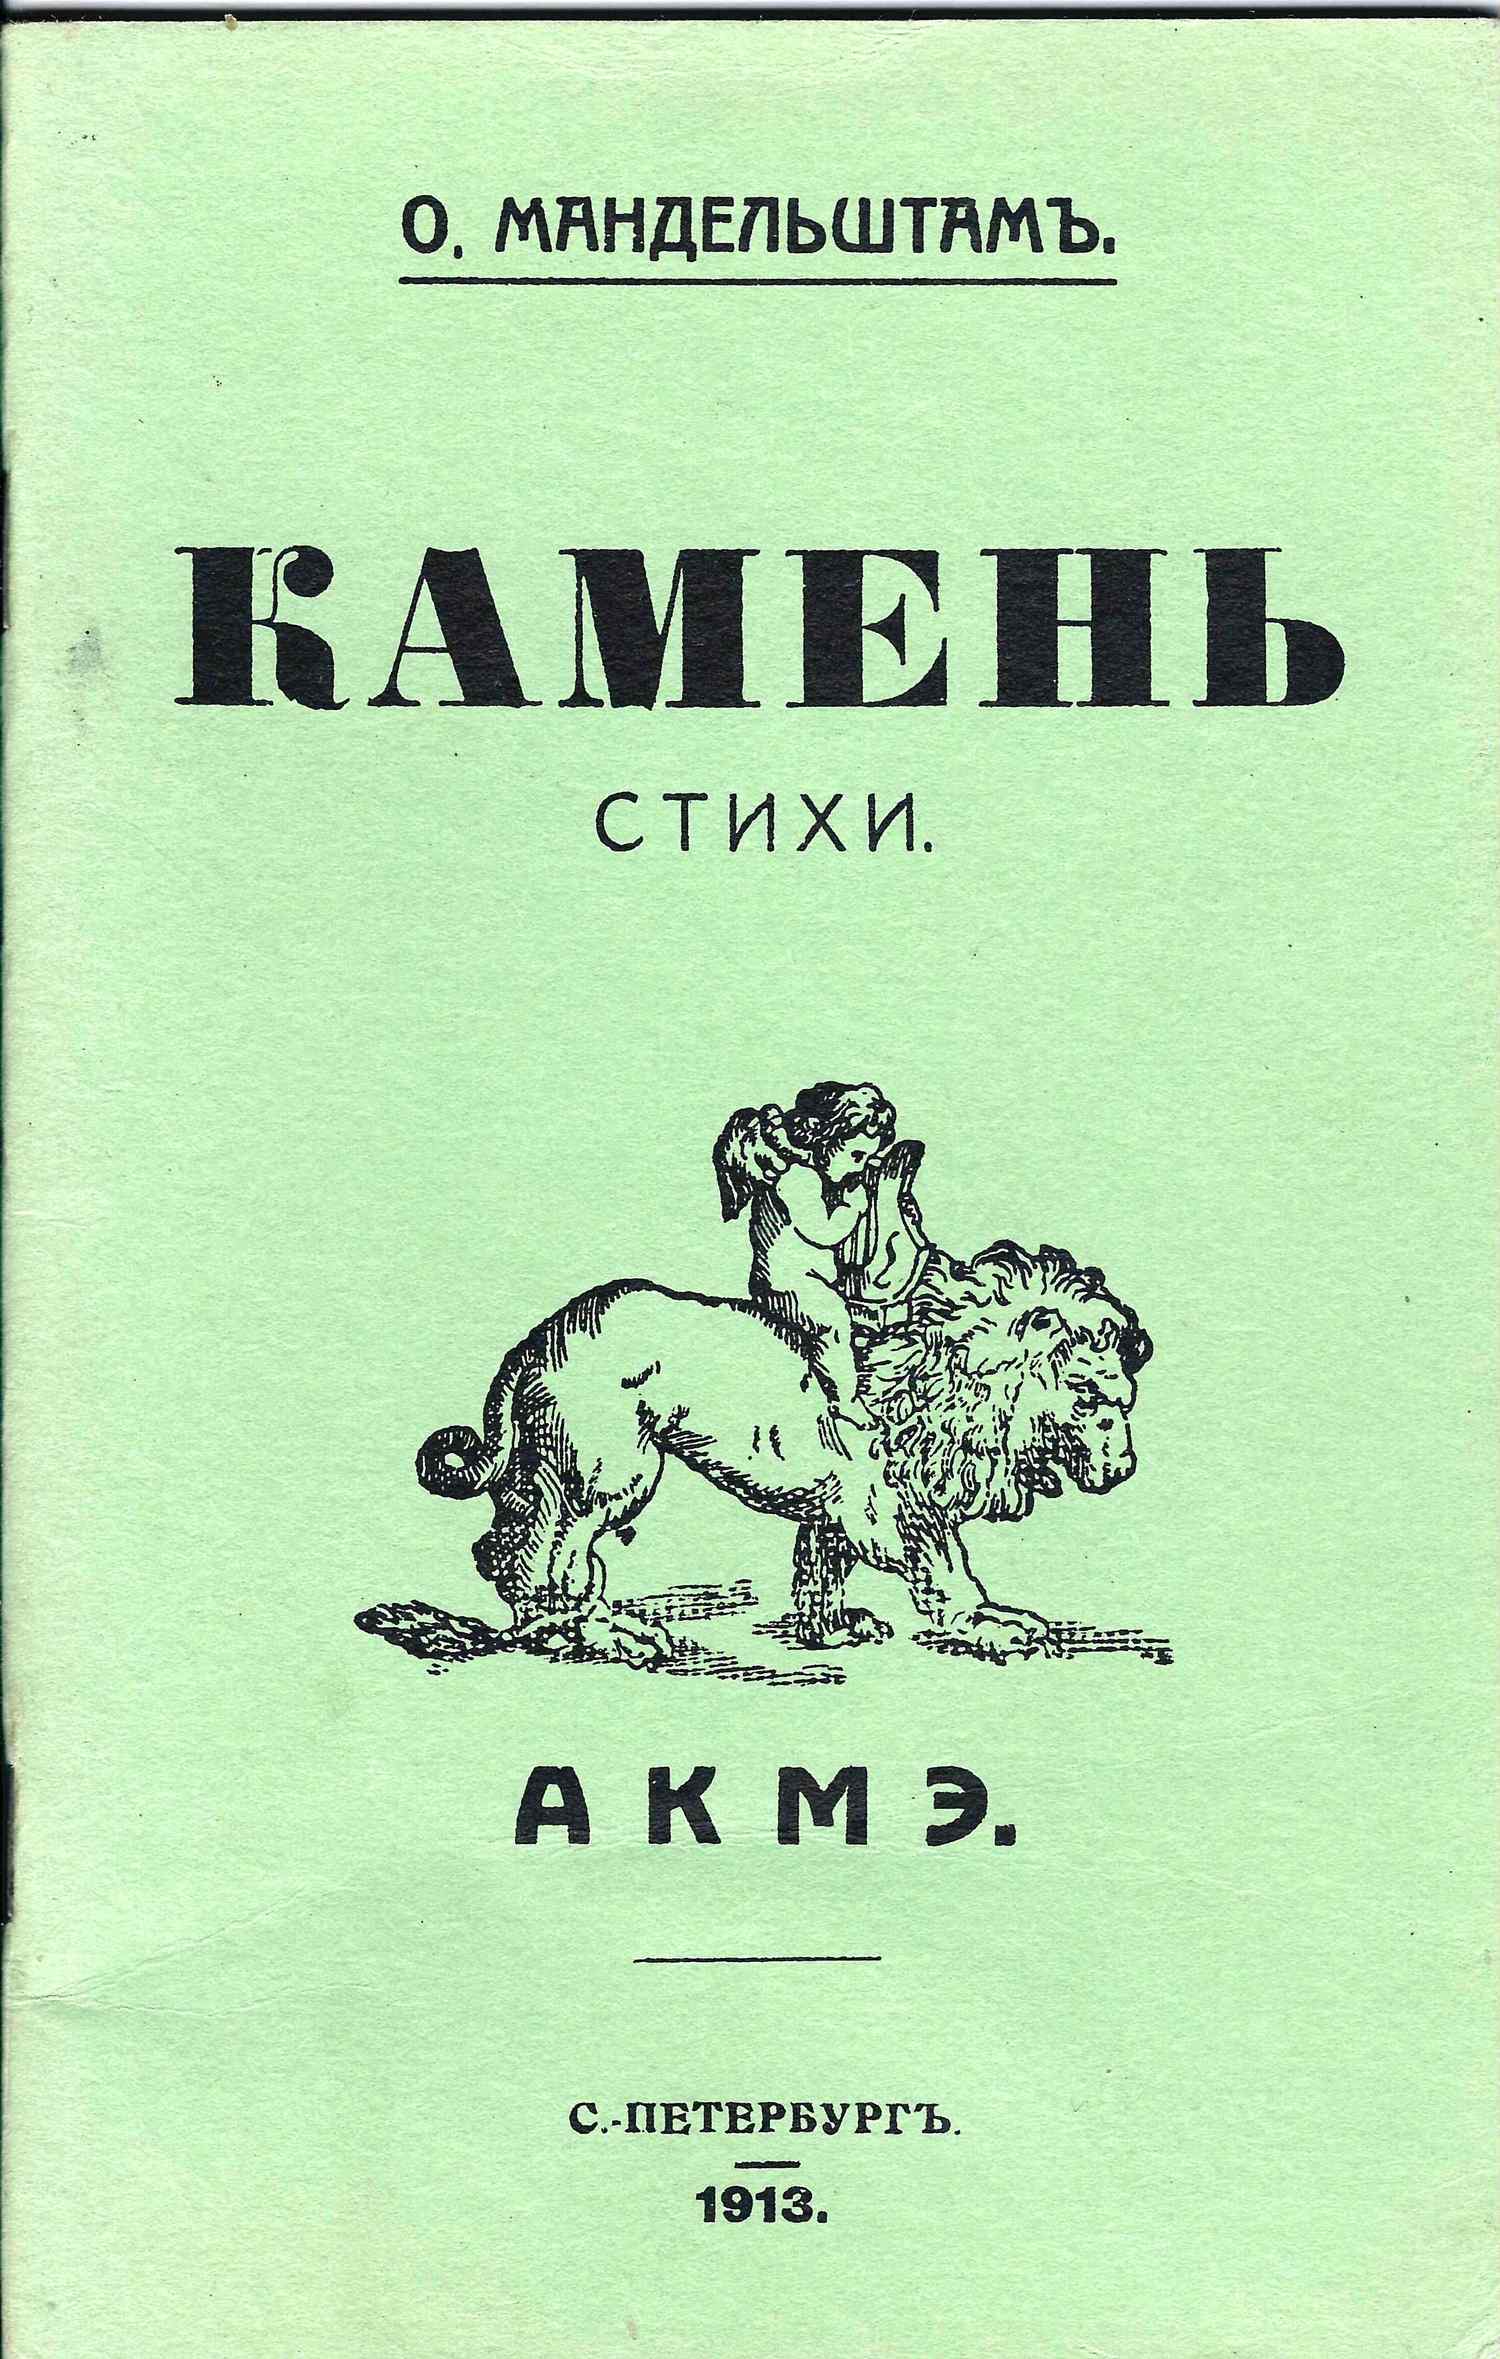 Мандельштам О. Камень. Стихи. (репринт издания СПб., 1913).